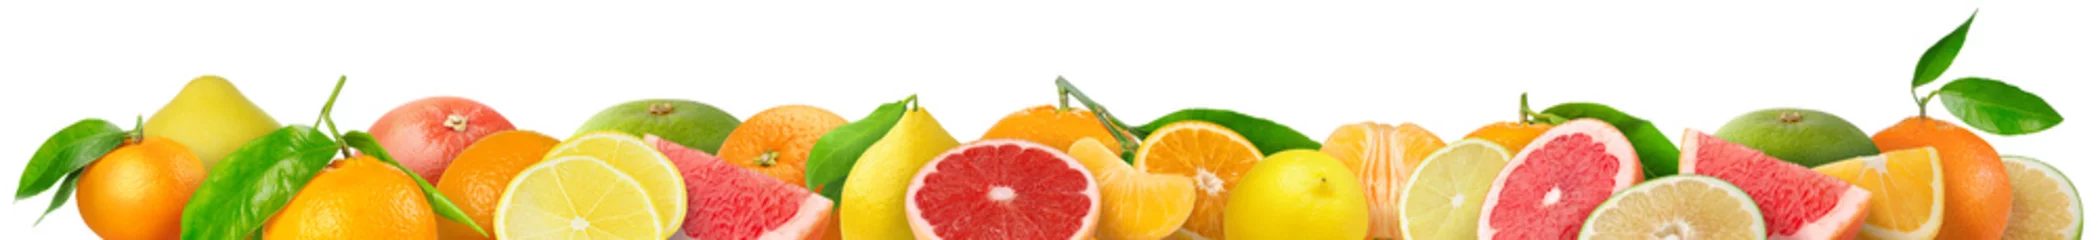 Foto op Aluminium Gemengde citrusvruchten grens. Stapel sinaasappel, citroen, mandarijn, grapefruit en andere citrusvruchten in horizontale samenstelling geïsoleerd op witte achtergrond © ChaoticDesignStudio